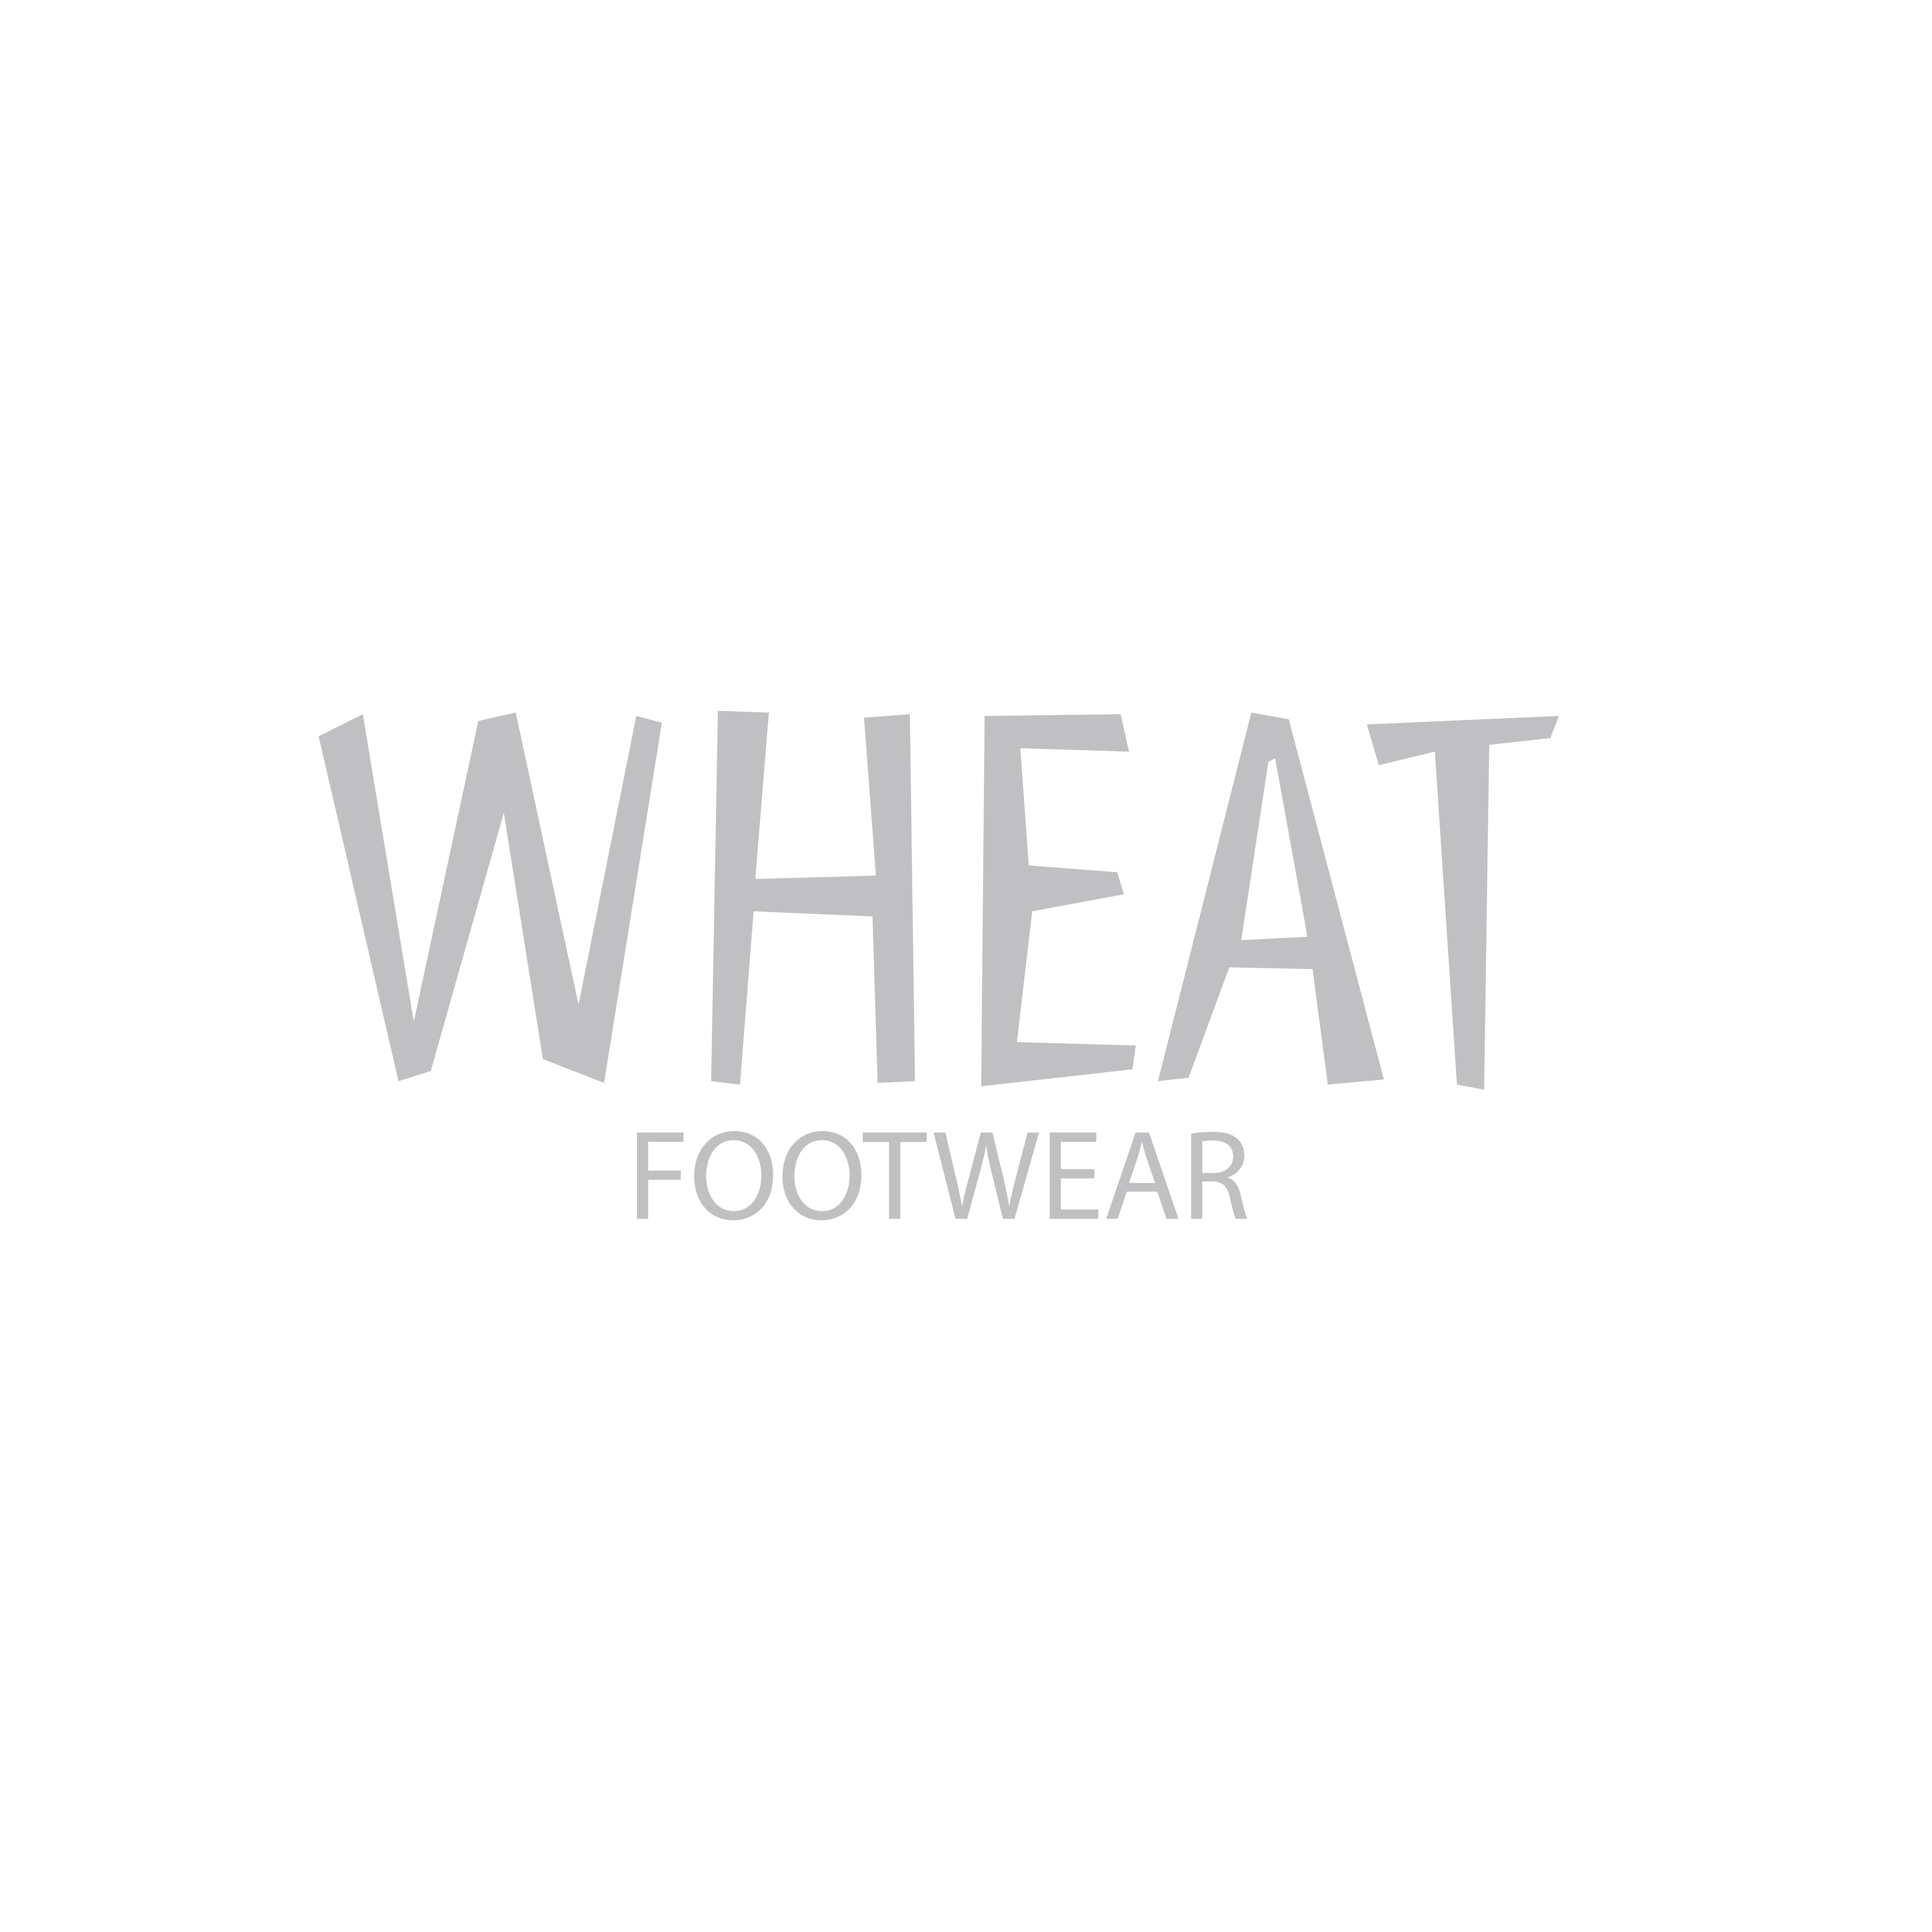 Wheat footwear